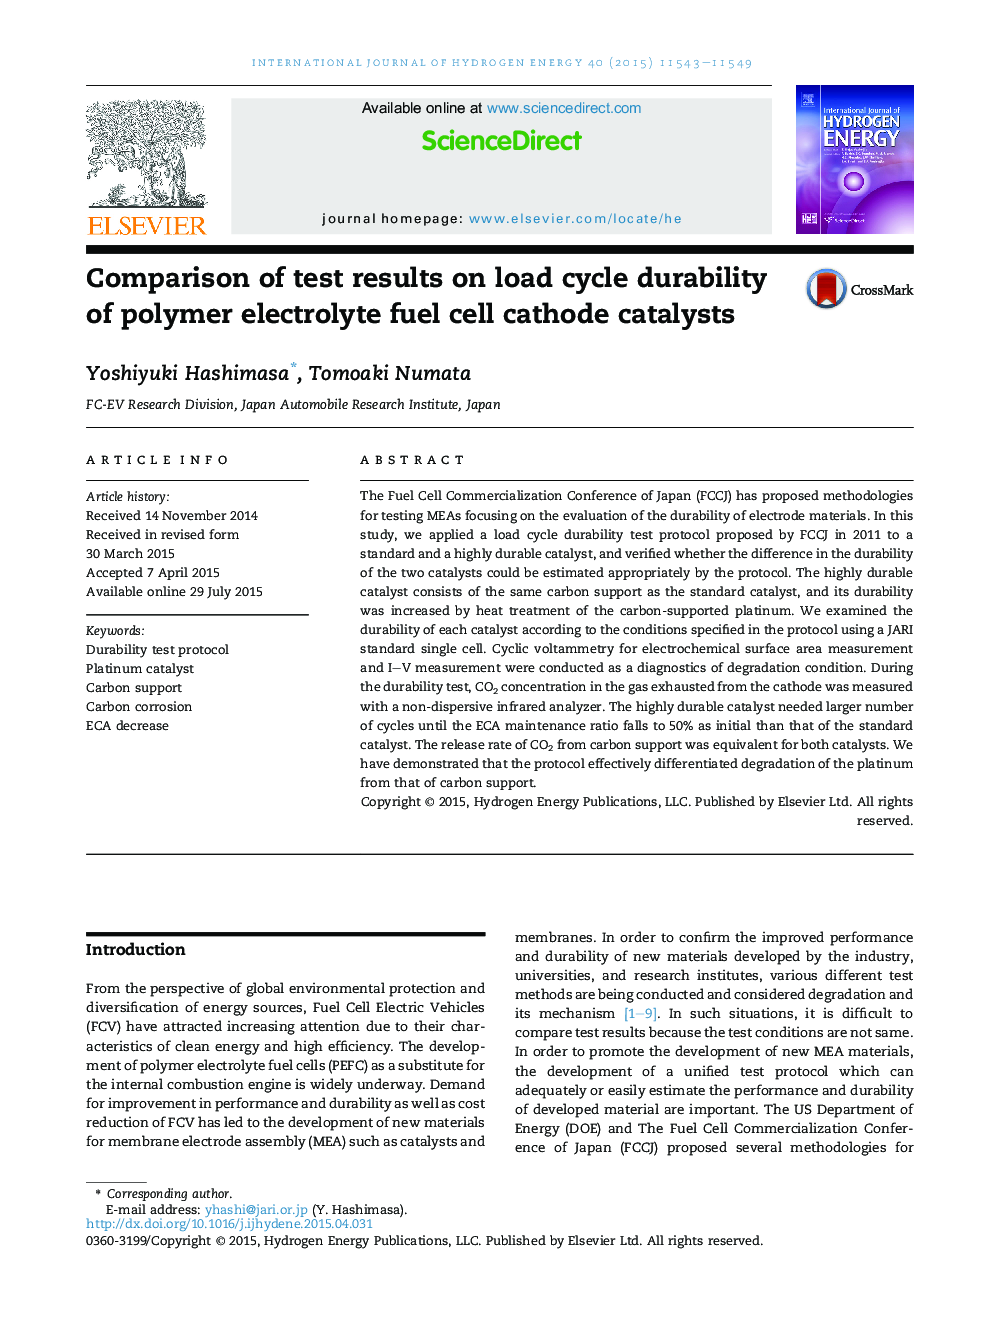 مقایسه نتایج آزمایش در دوام چرخه بار سیال کاتالیست سلول سوختی الکترولیت پلیمر 